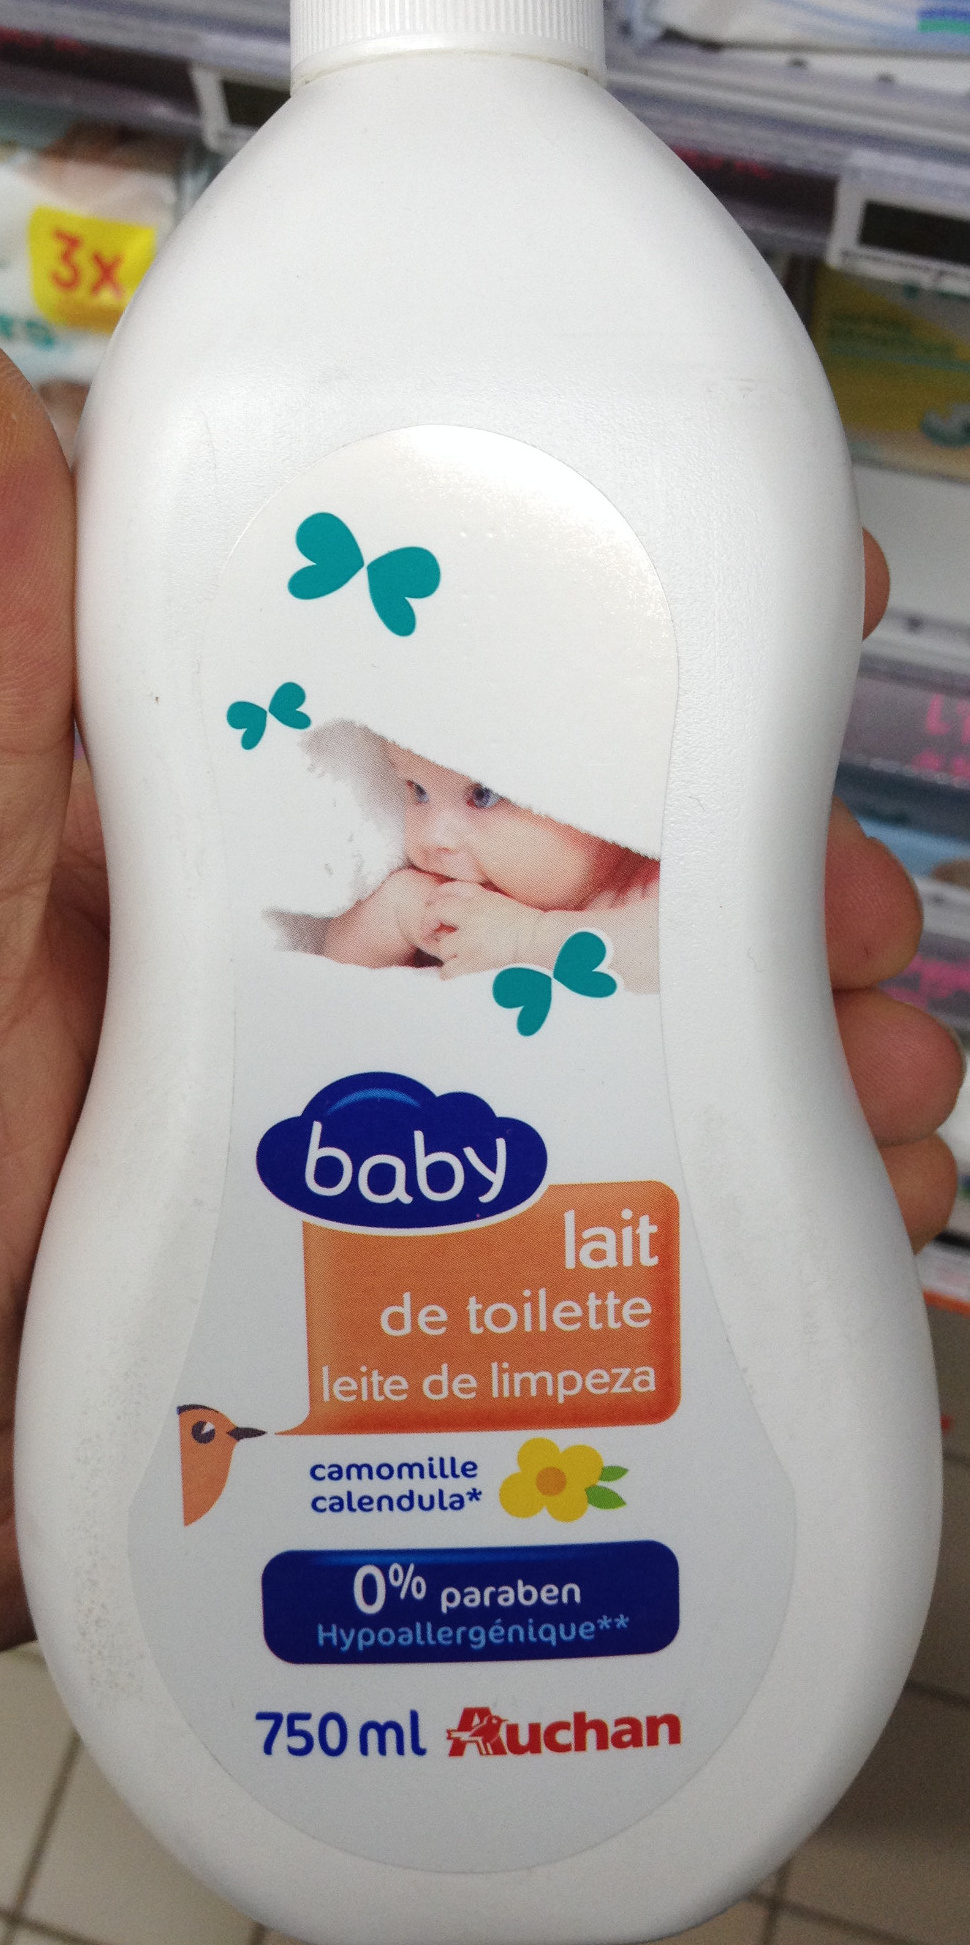 Lait de toilette baby camomille - Produkt - fr